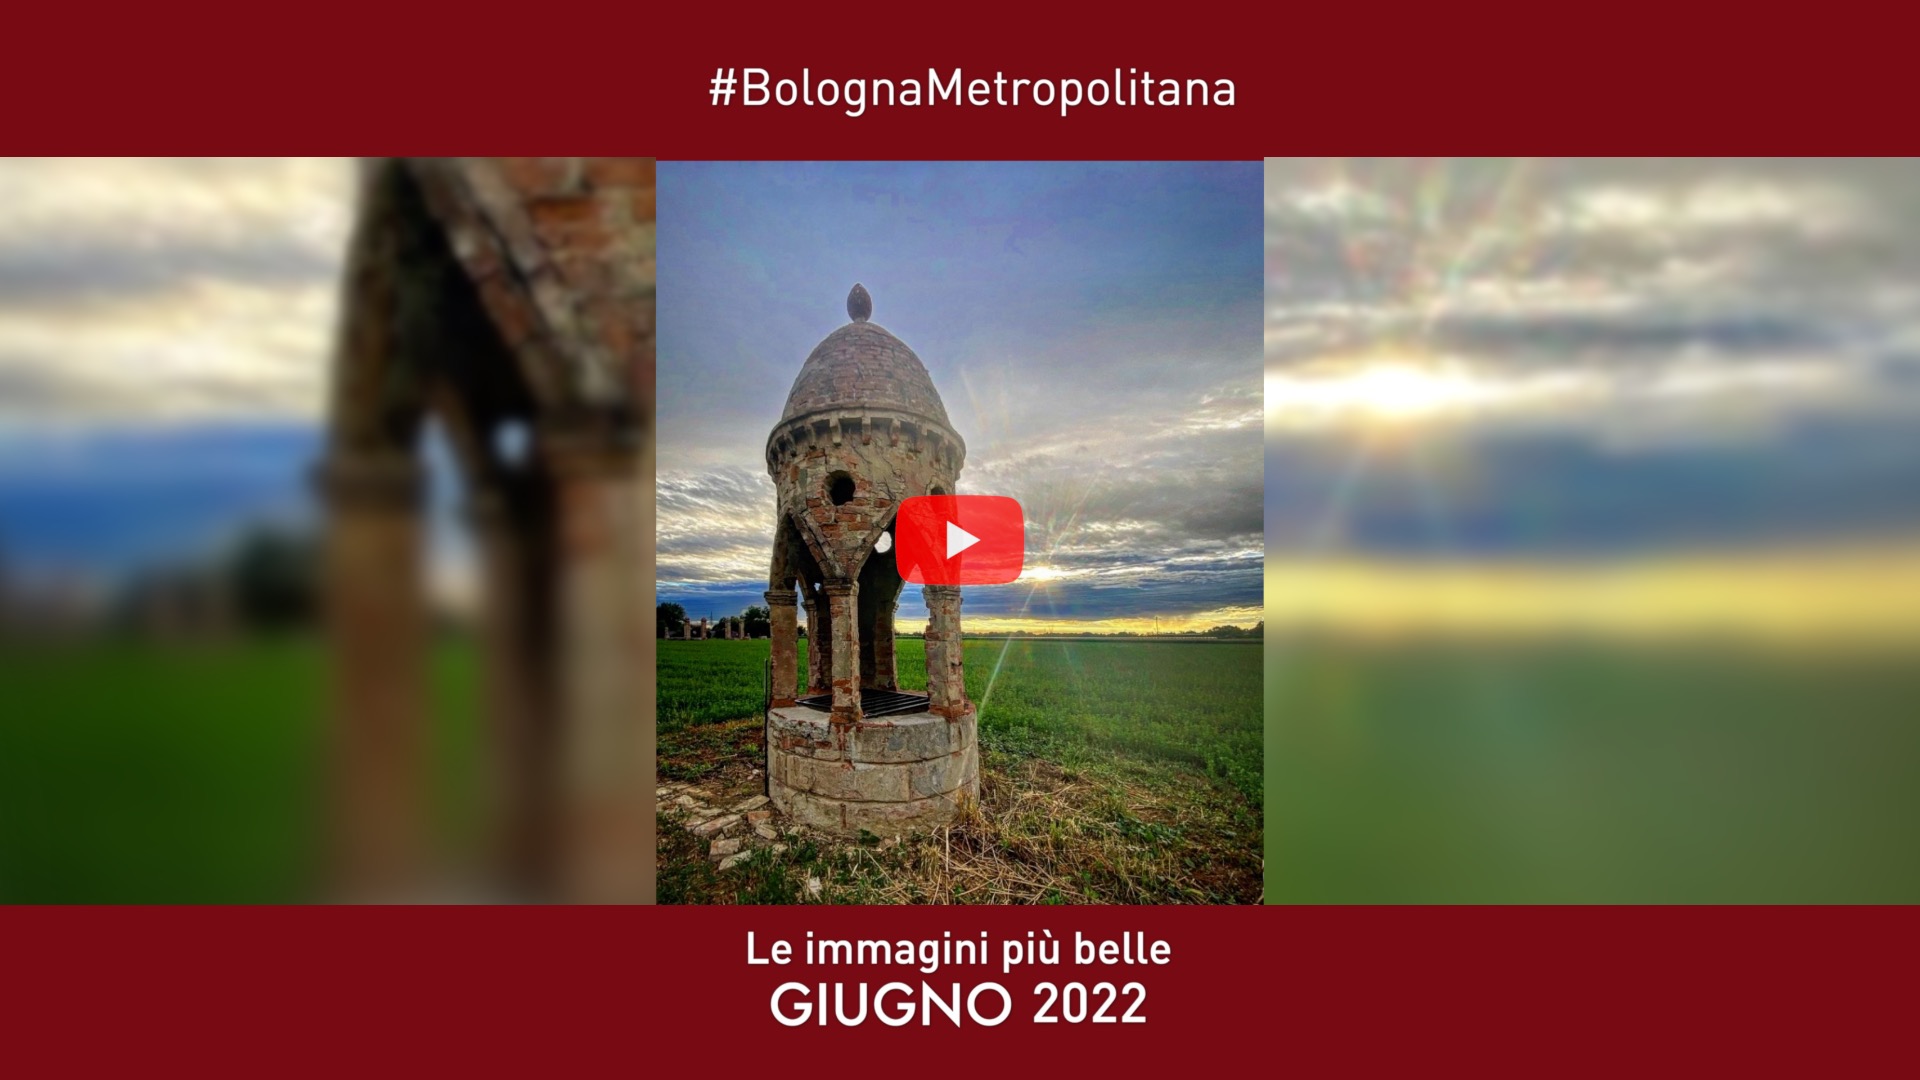 #BolognaMetropolitana - Le immagini più belle di giugno 2022